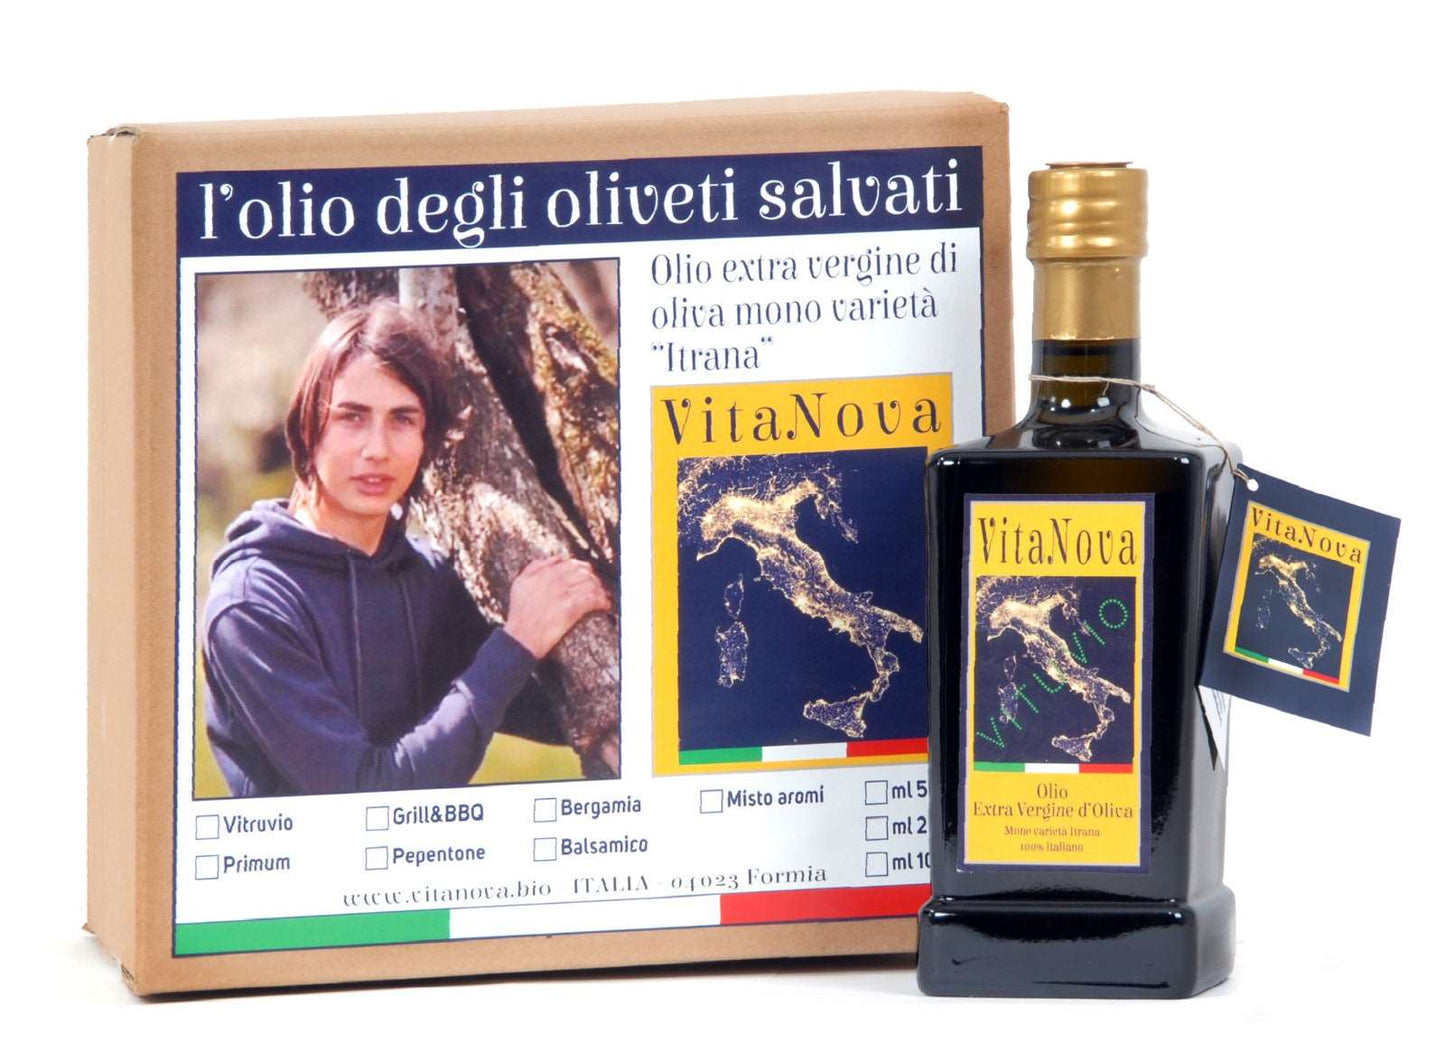 6 bottiglie di olio EVO VitaNova “Vitruvio” - Mono varietà Itrana, alti polifenoli - I migliori prodotti Made in Italy da Fiera di Monza Shop - Solo 126€! Acquista subito su Fiera di Monza Shop!